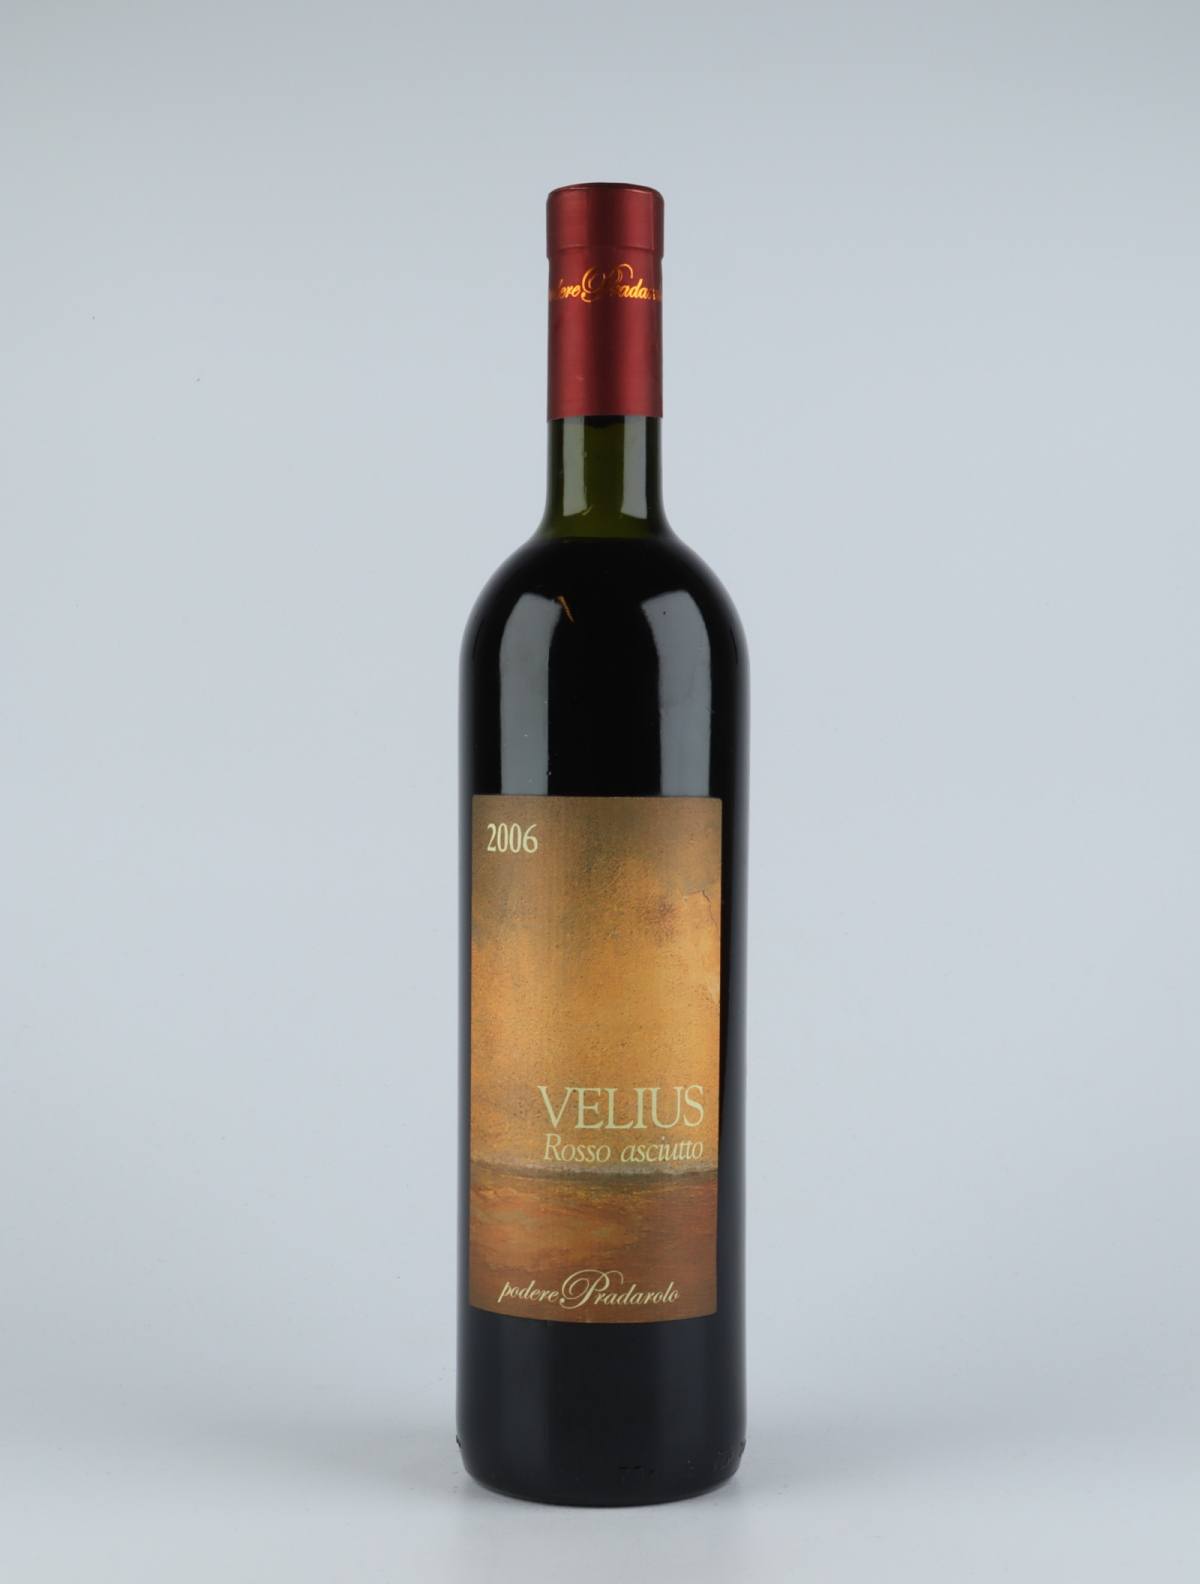 A bottle 2006 Velius Rosso Asciutto Red wine from Podere Pradarolo, Emilia-Romagna in Italy